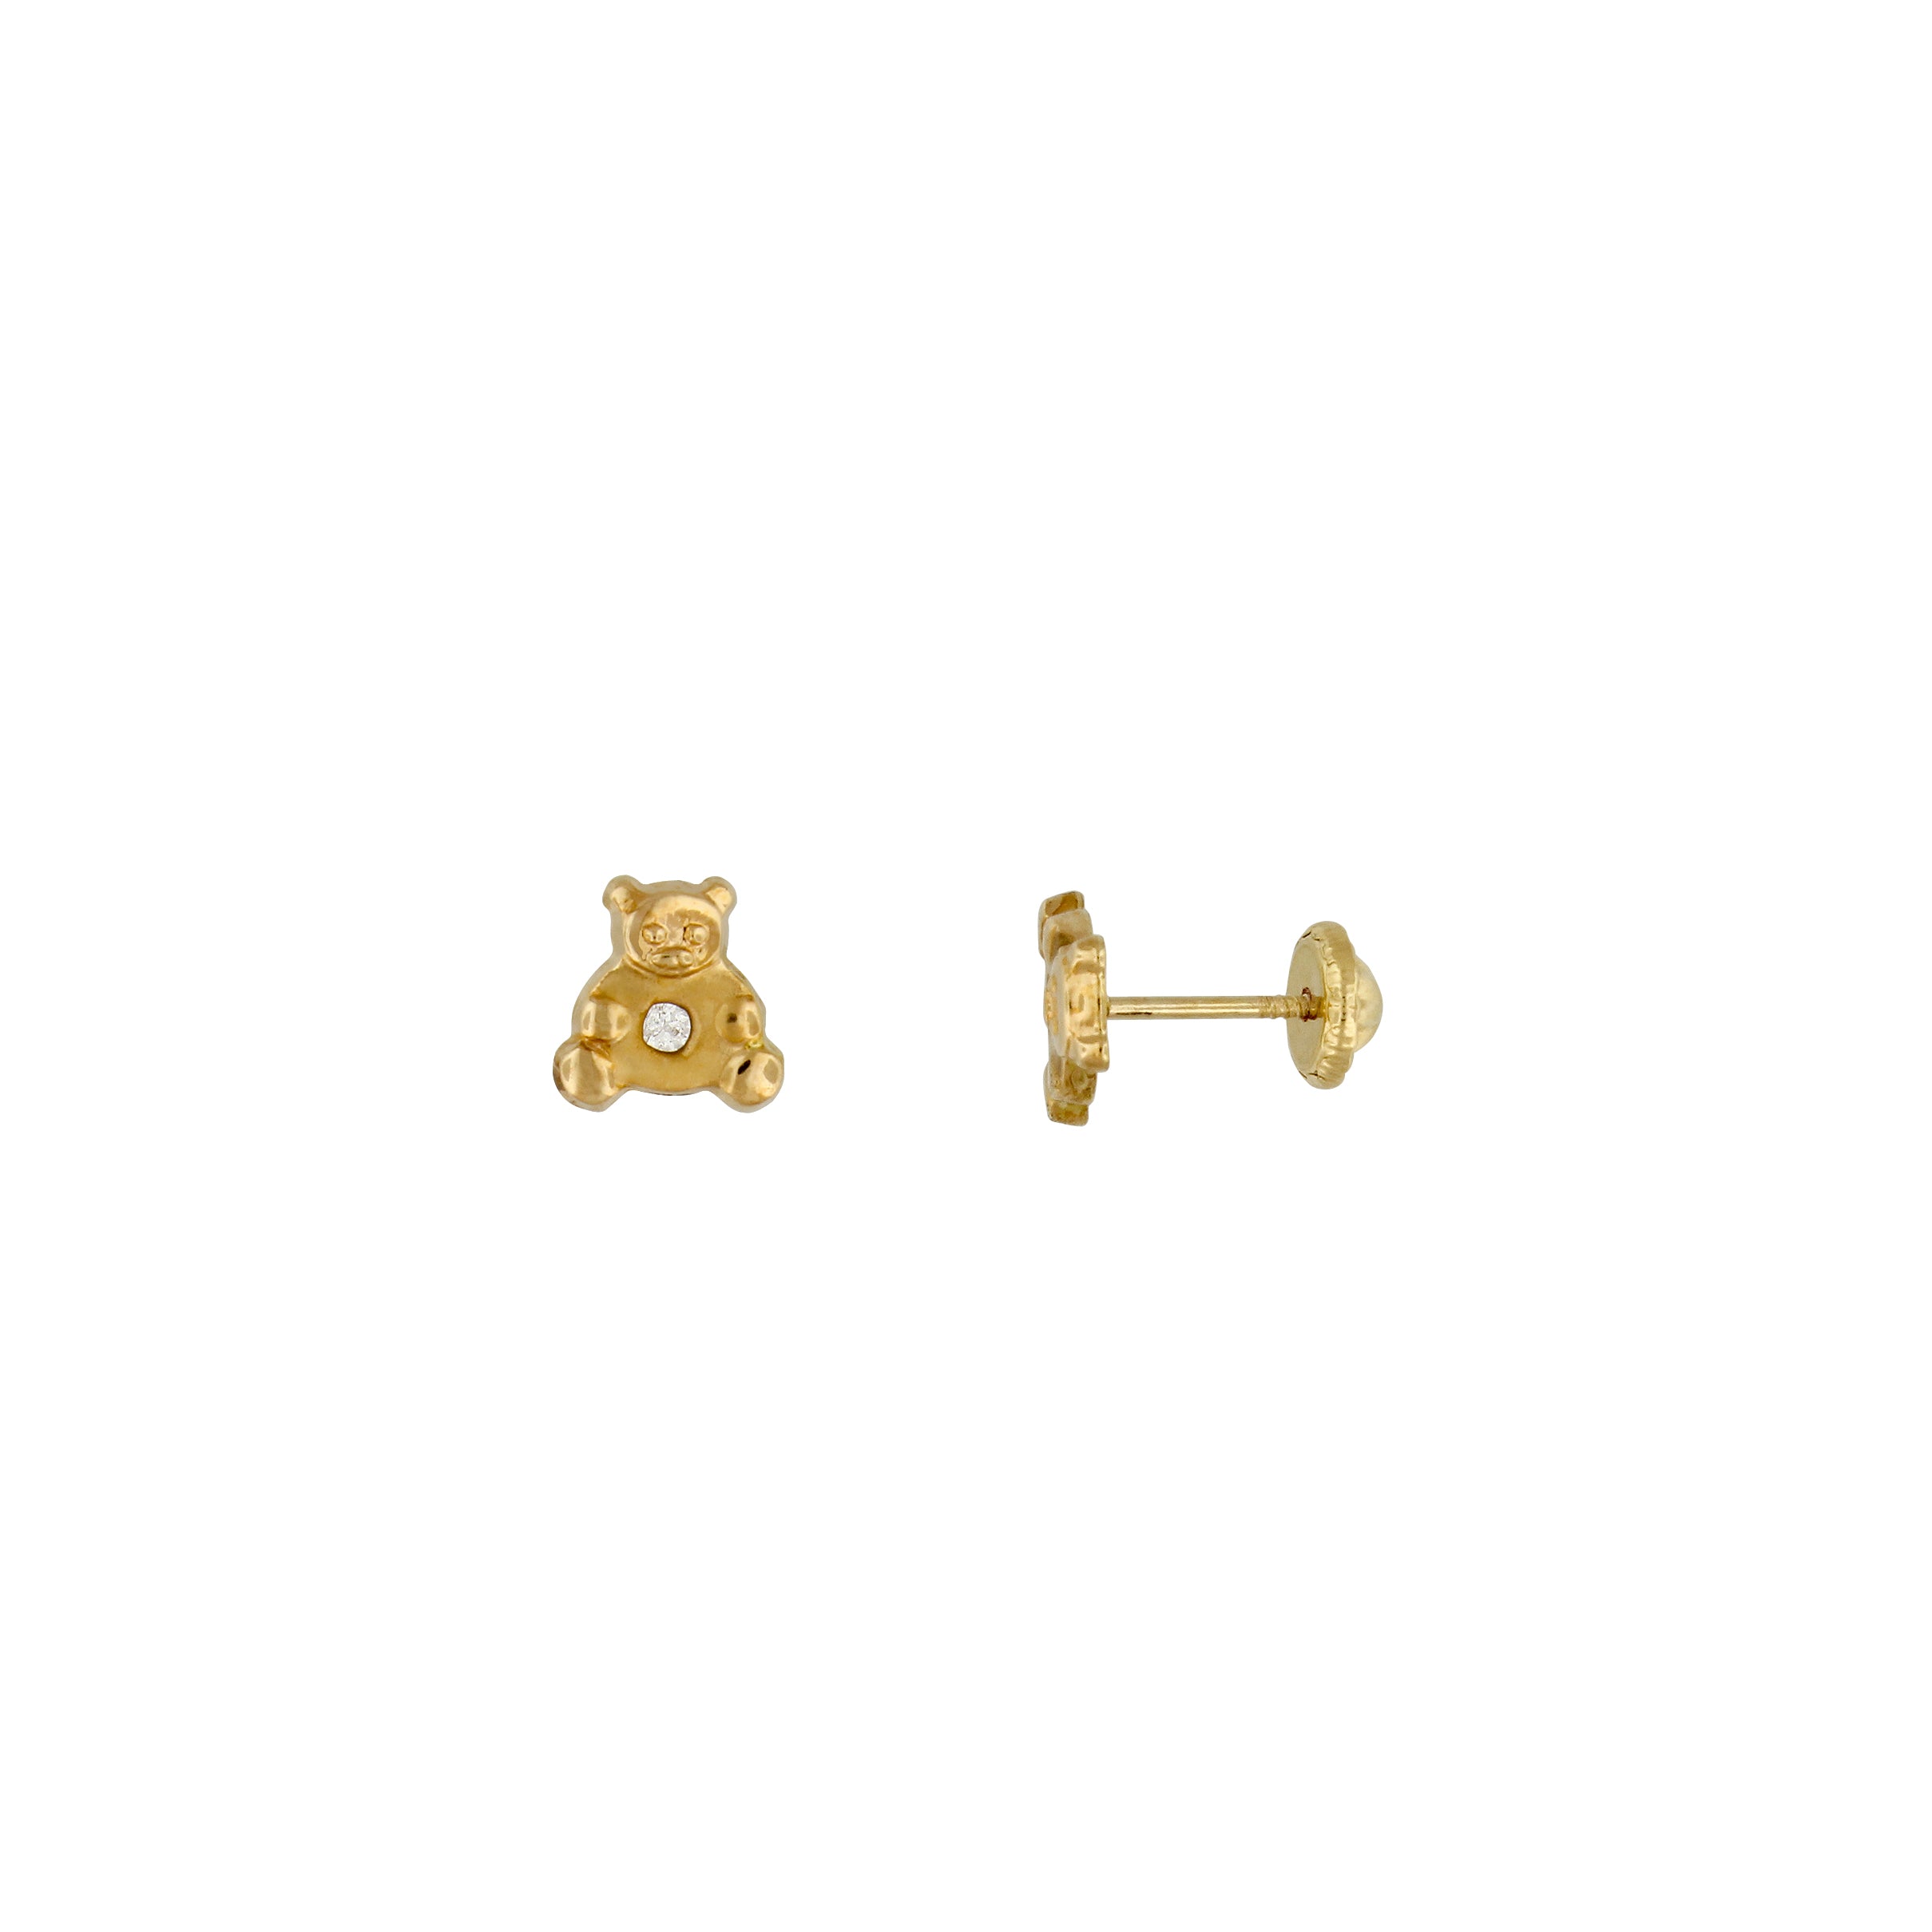 Bfly 10k Gold CZ Teddy Bear Baby Earrings